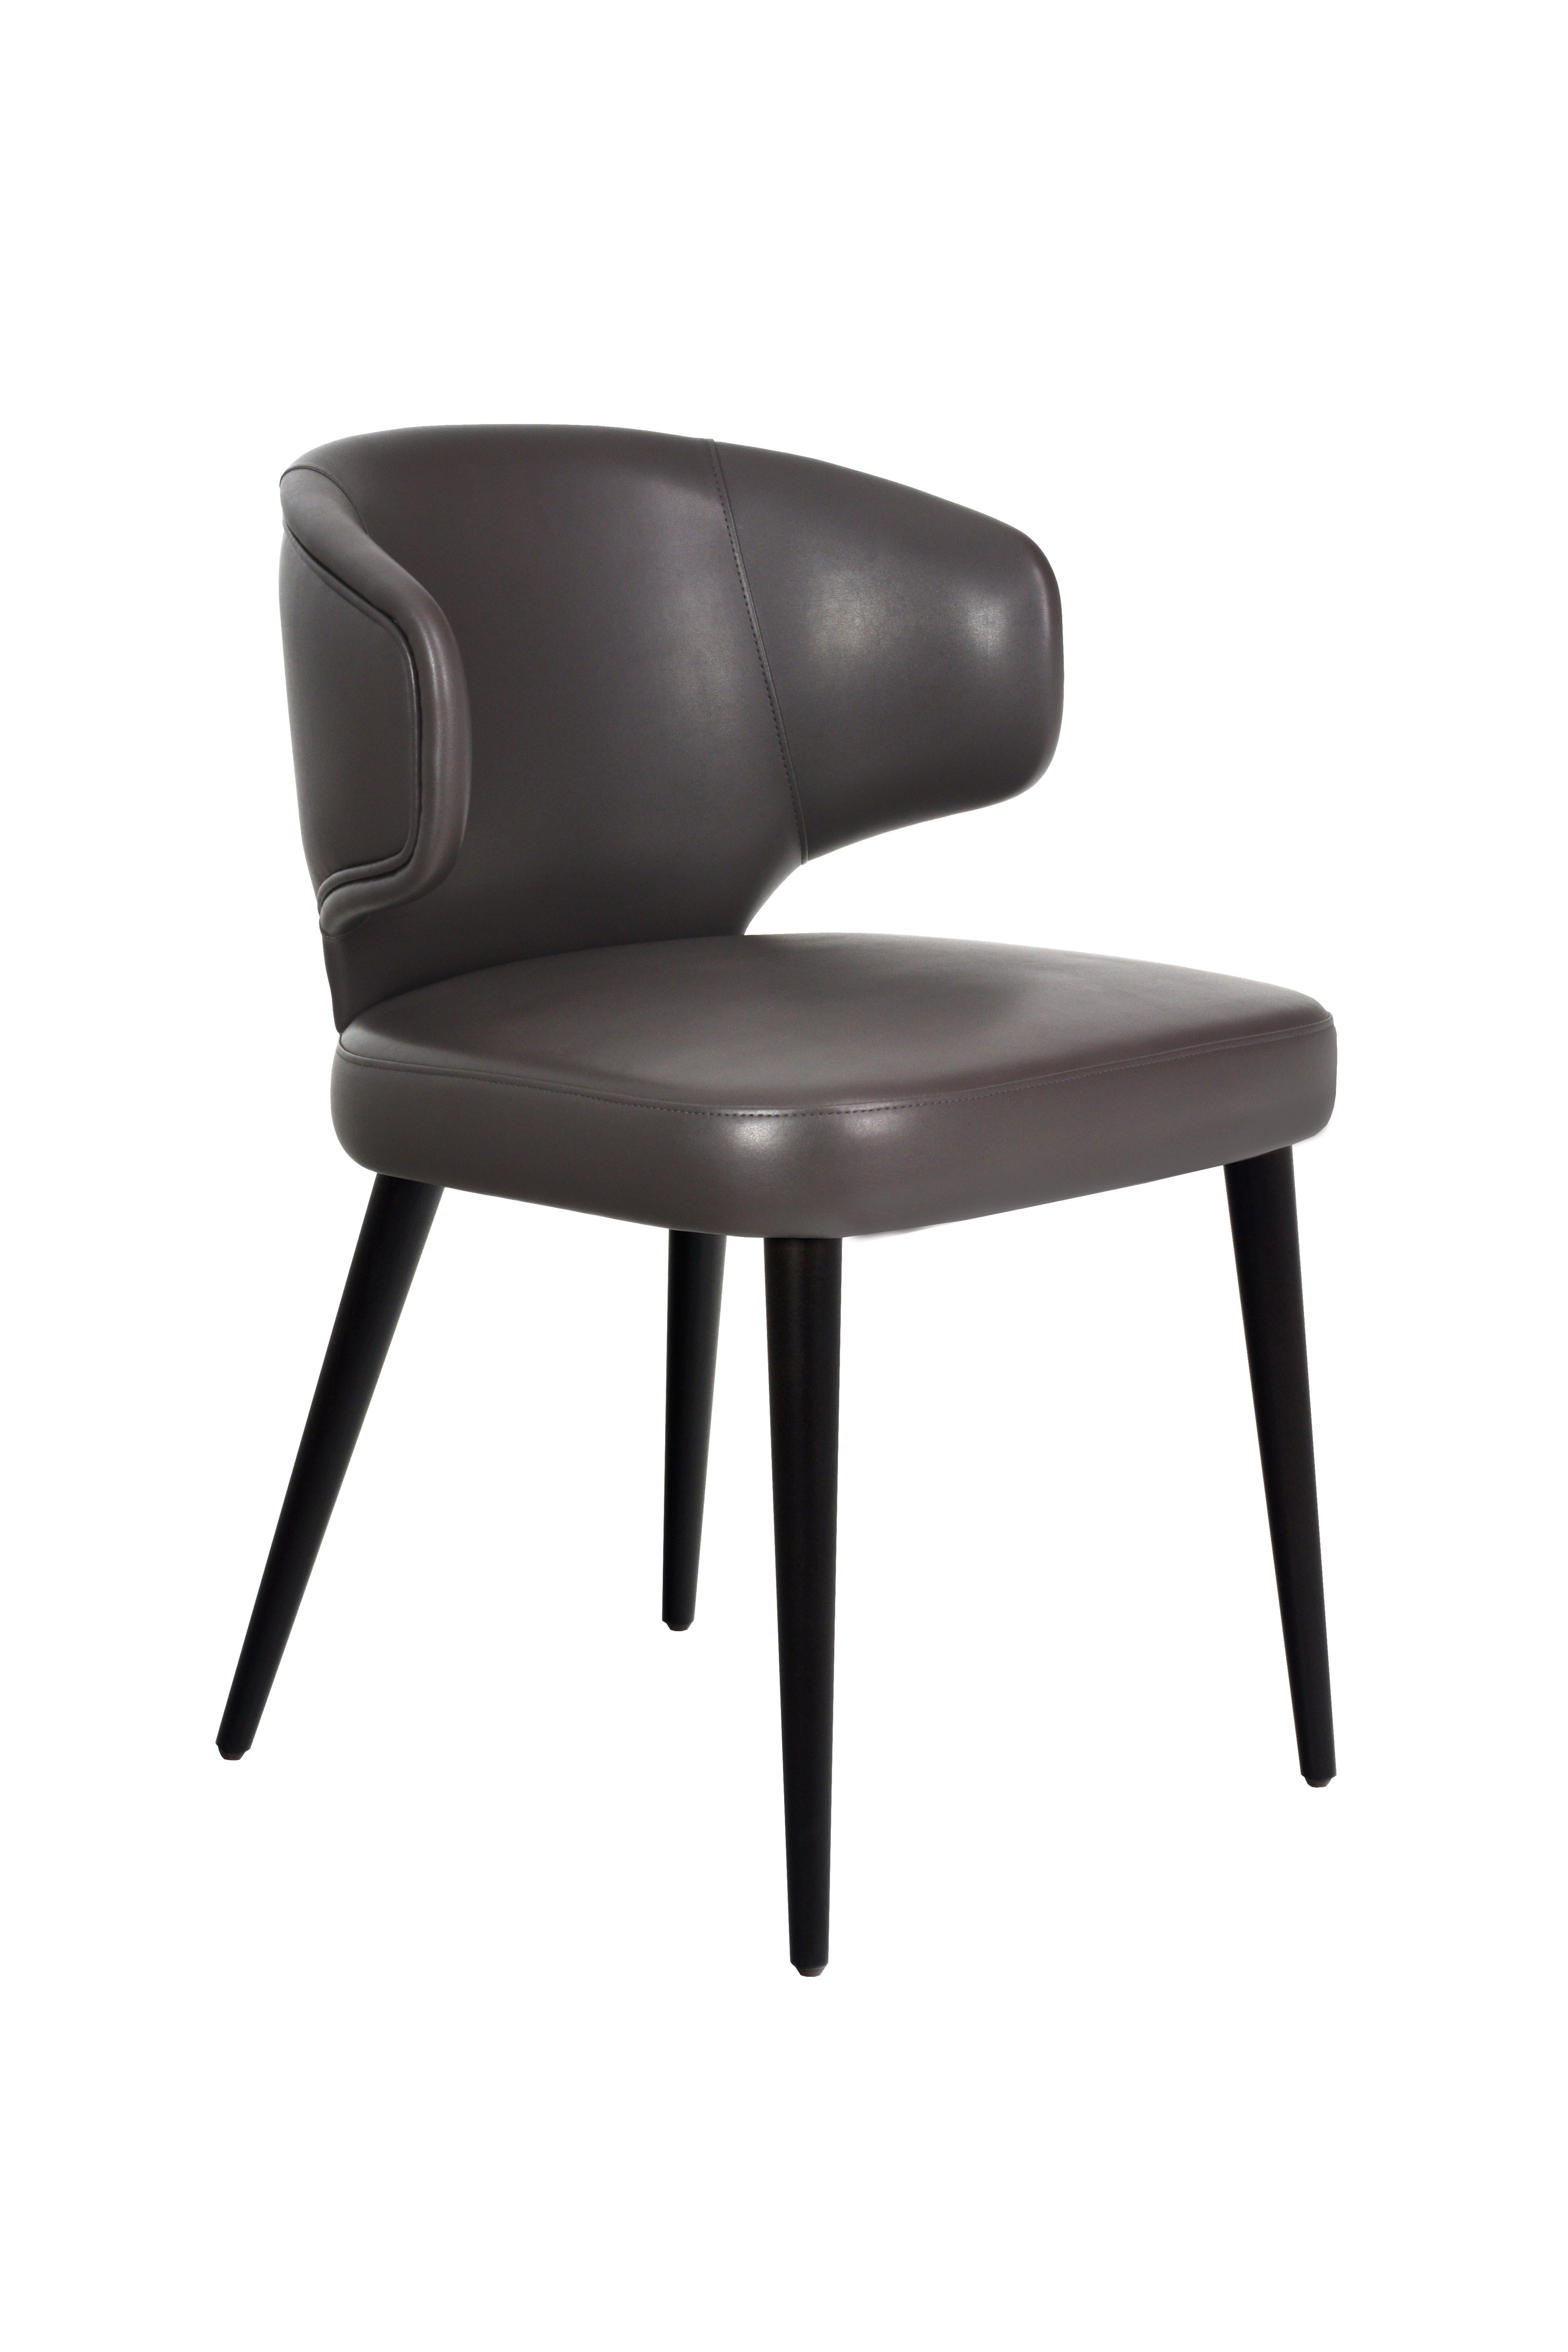 Chaise YORK - un chef-d'œuvre qui harmonise parfaitement le style et le confort ! Conçue de manière unique pour s'adapter à votre corps, la chaise YORK vous garantit une expérience d'assise extraordinaire. Ses pieds en bois, entourés d'un cadre